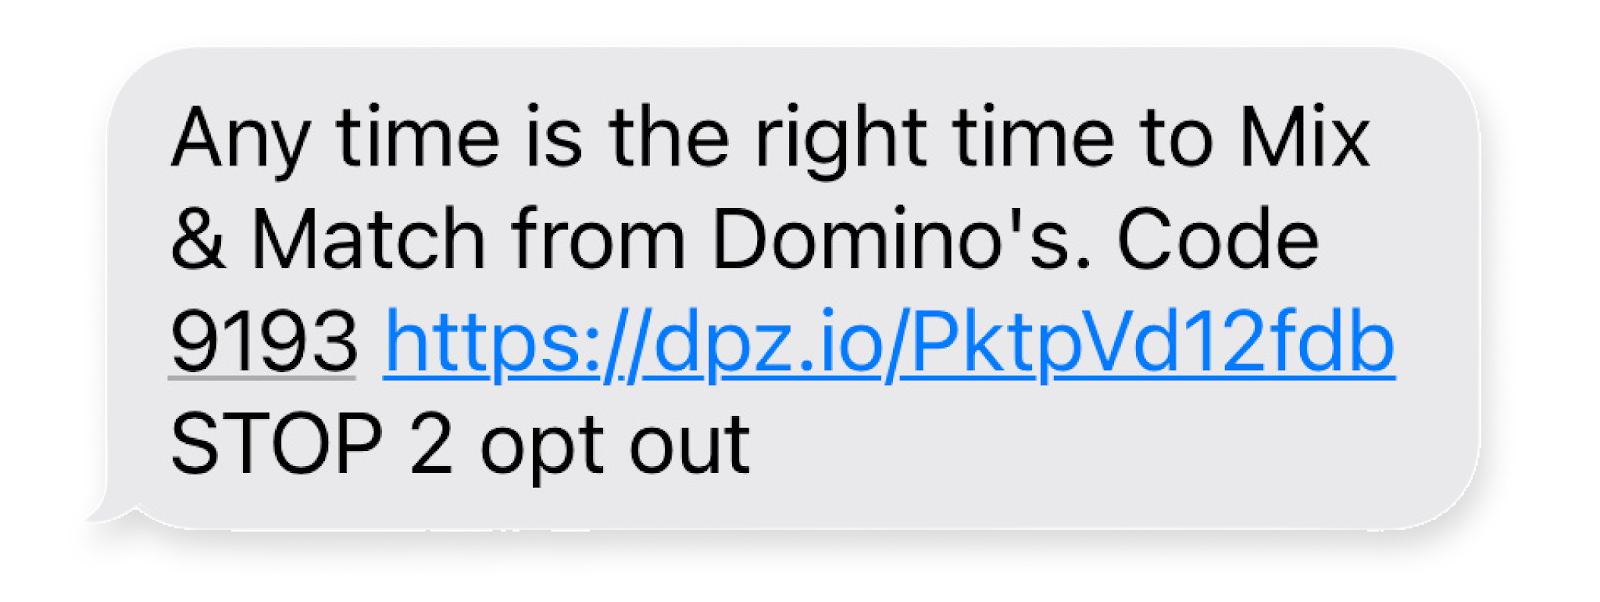 dominos sms short link